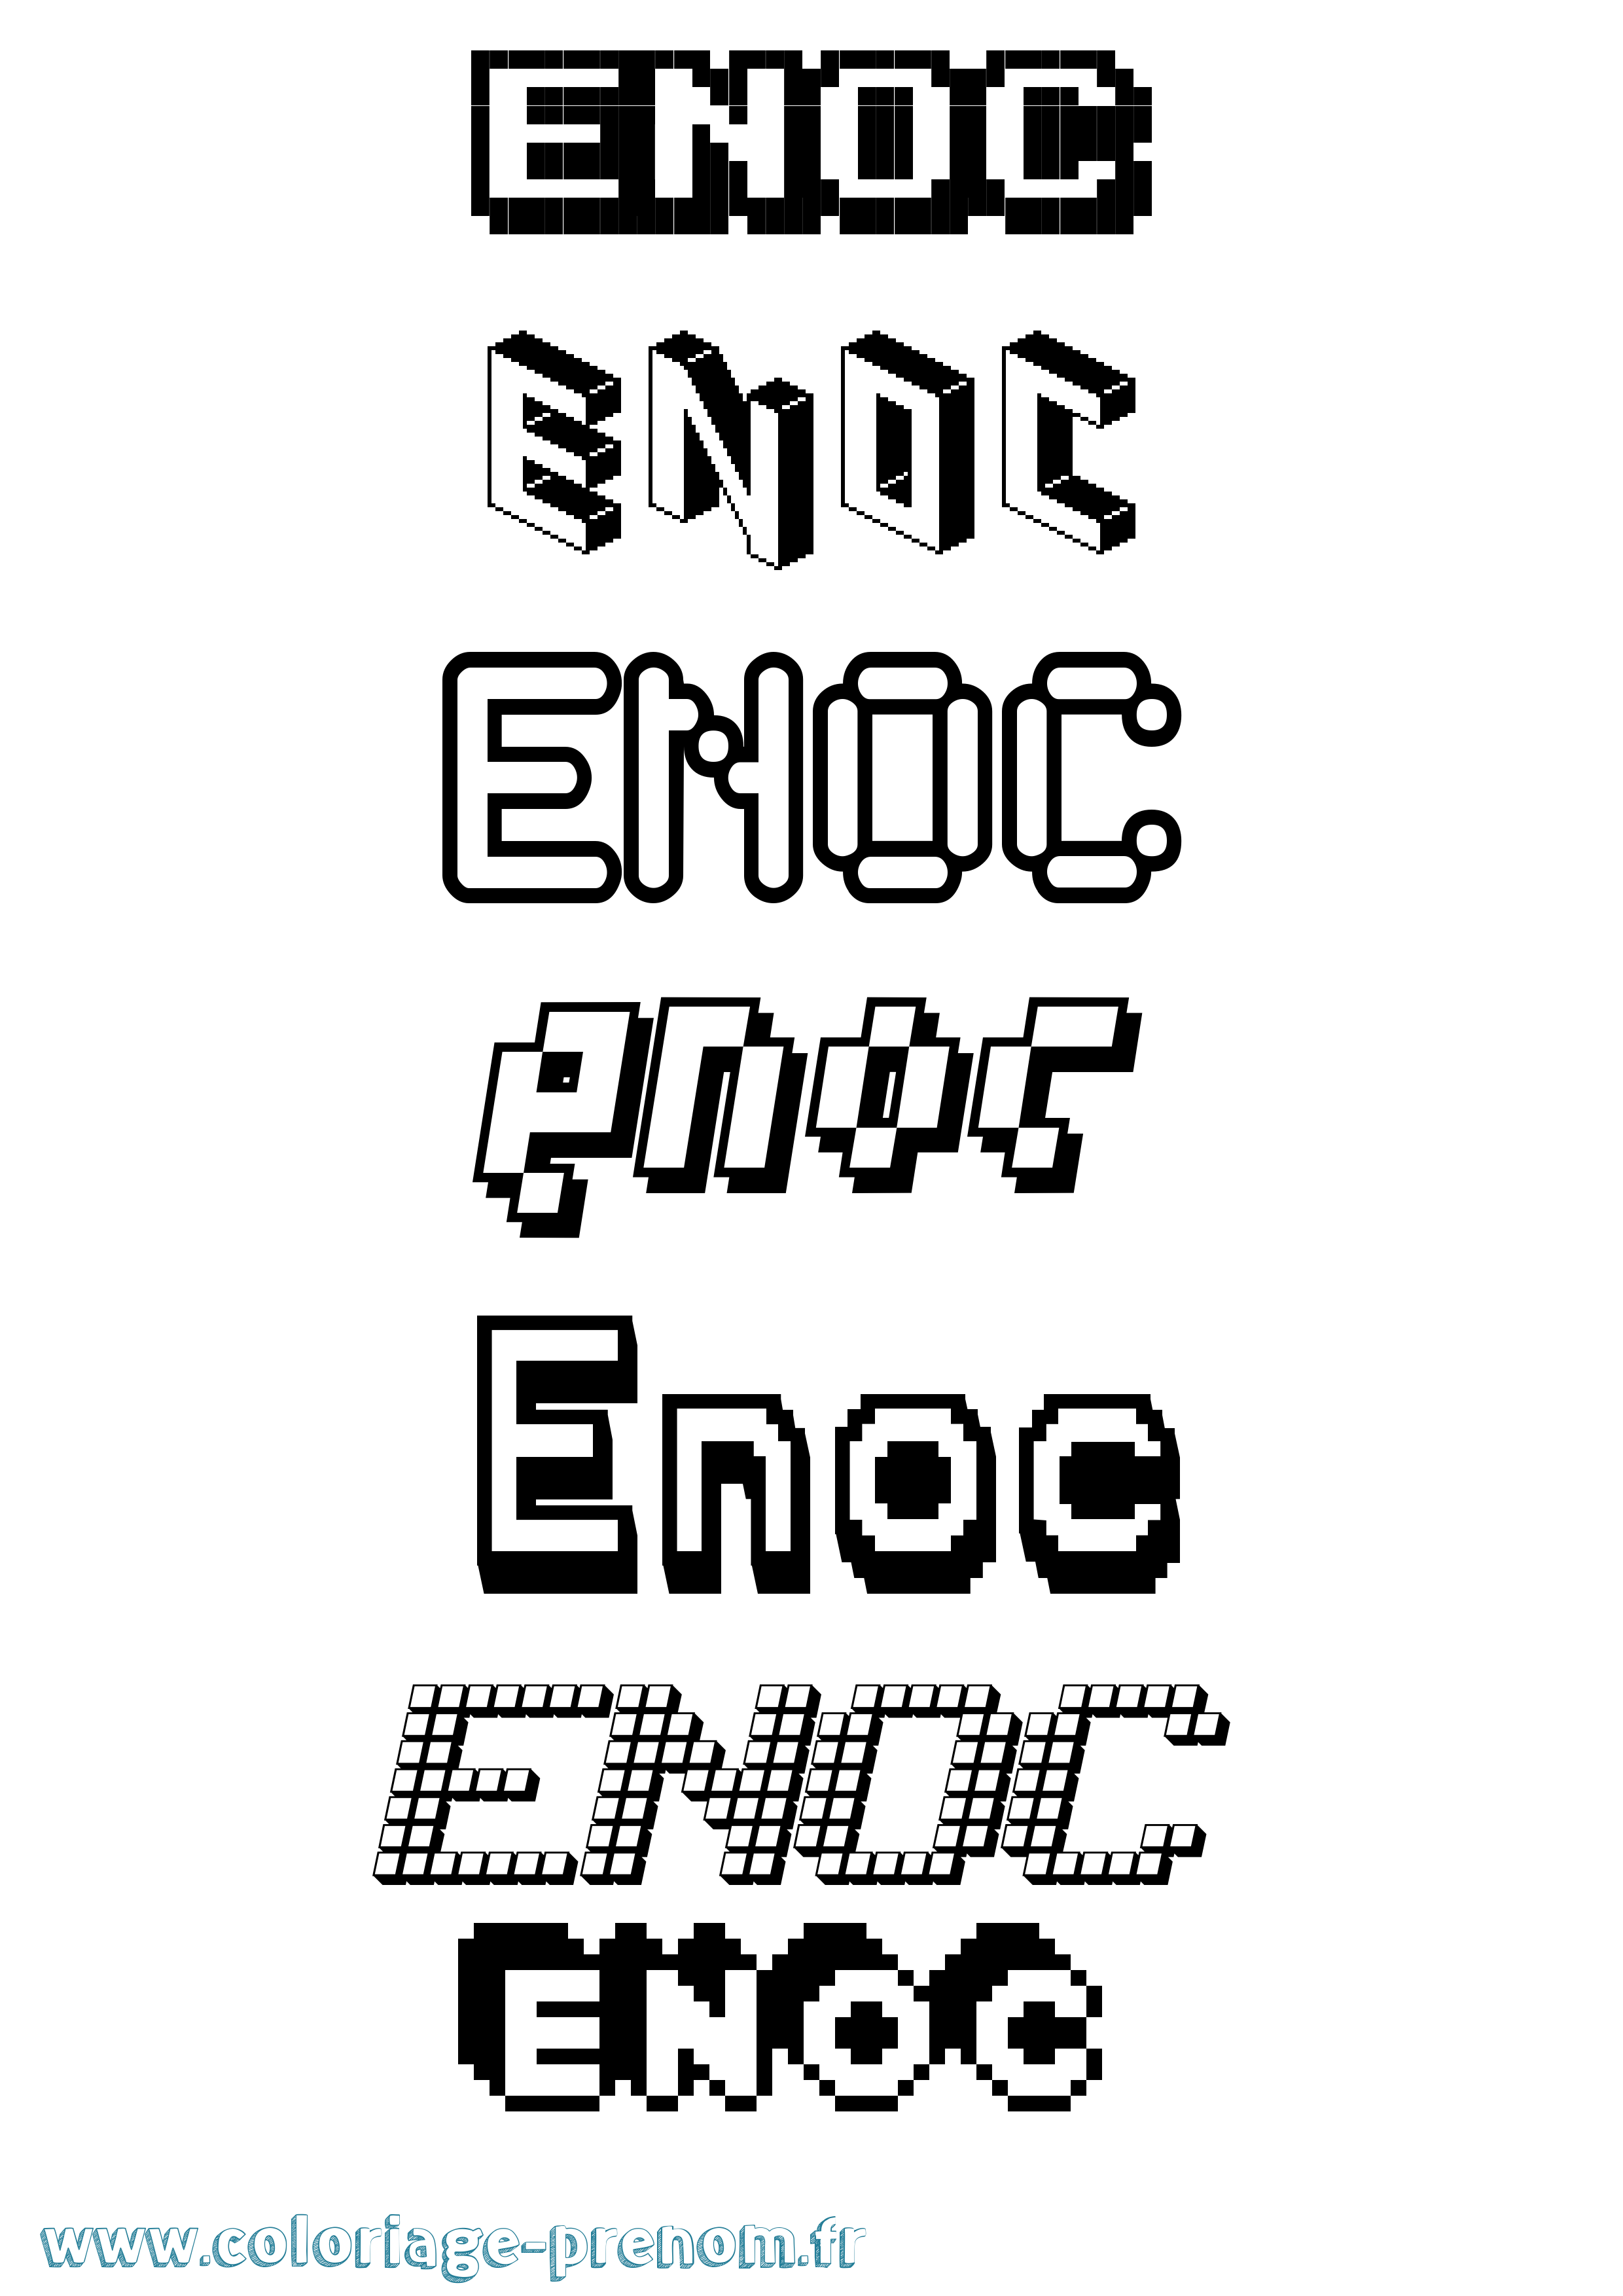 Coloriage prénom Enoc Pixel